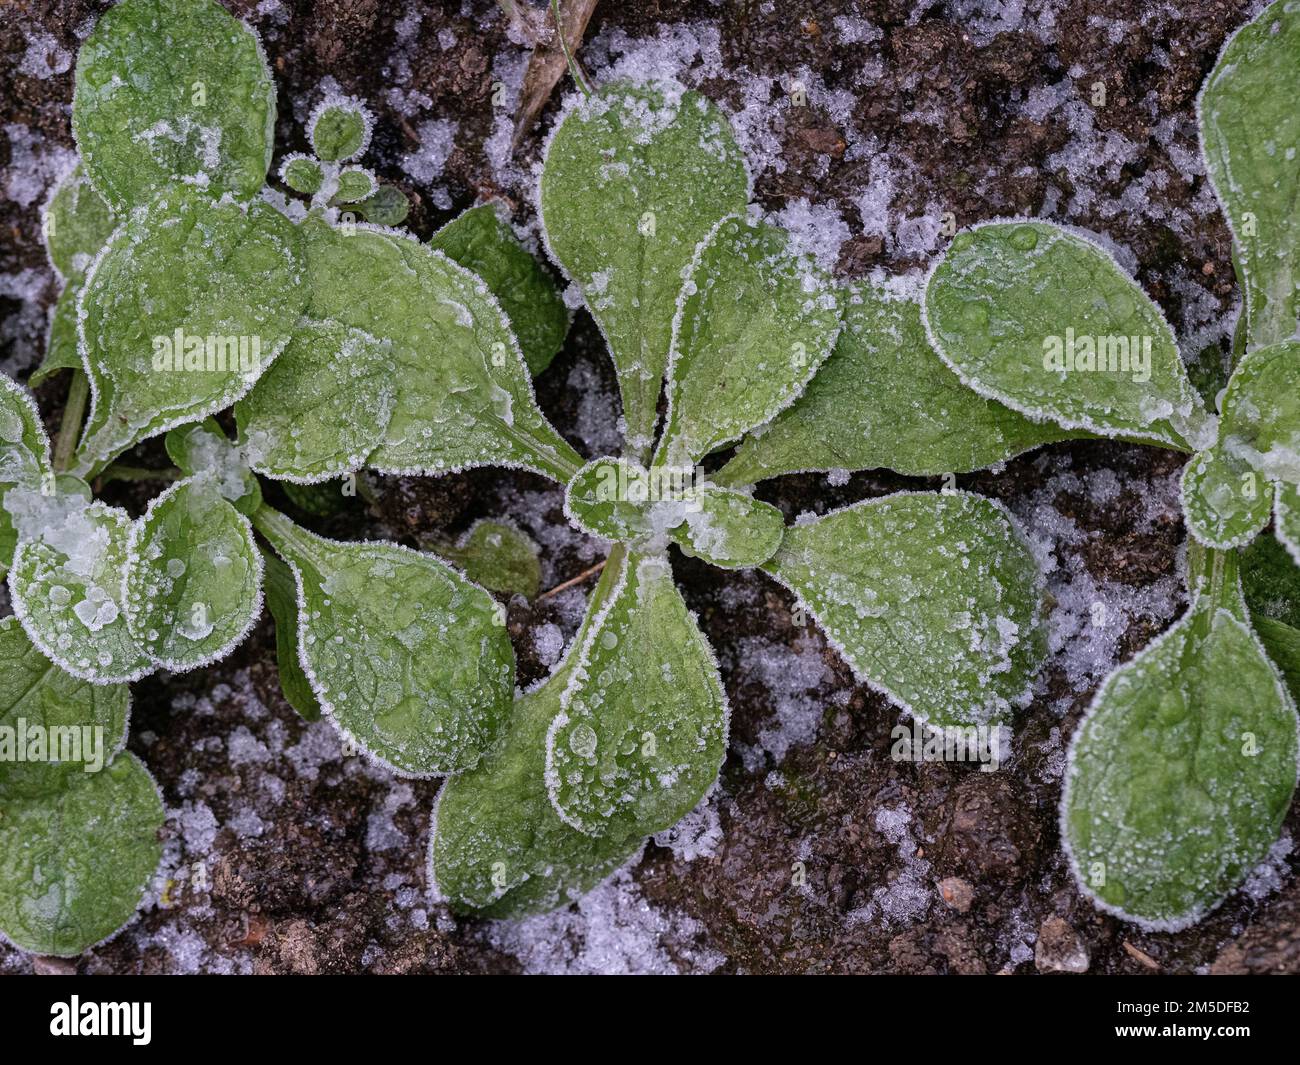 Junge Setzlinge aus Maissalat oder Lammsalat, die nach hartem Frost mit Eiskristallen bedeckt sind. Stockfoto